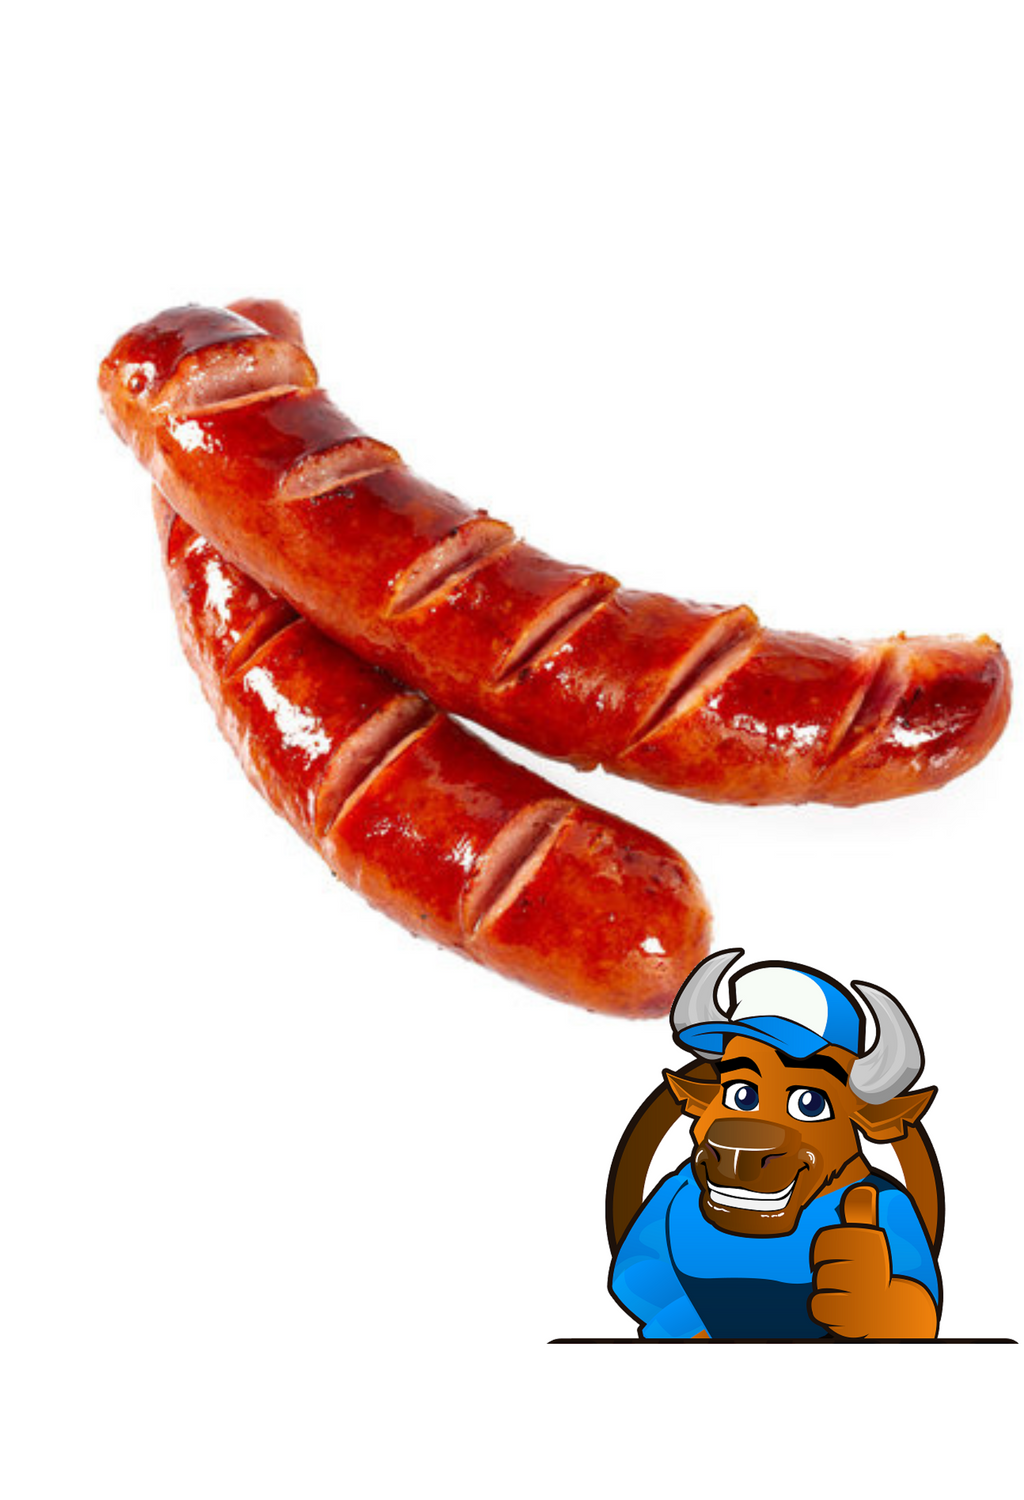 Smokey Pork Sausage